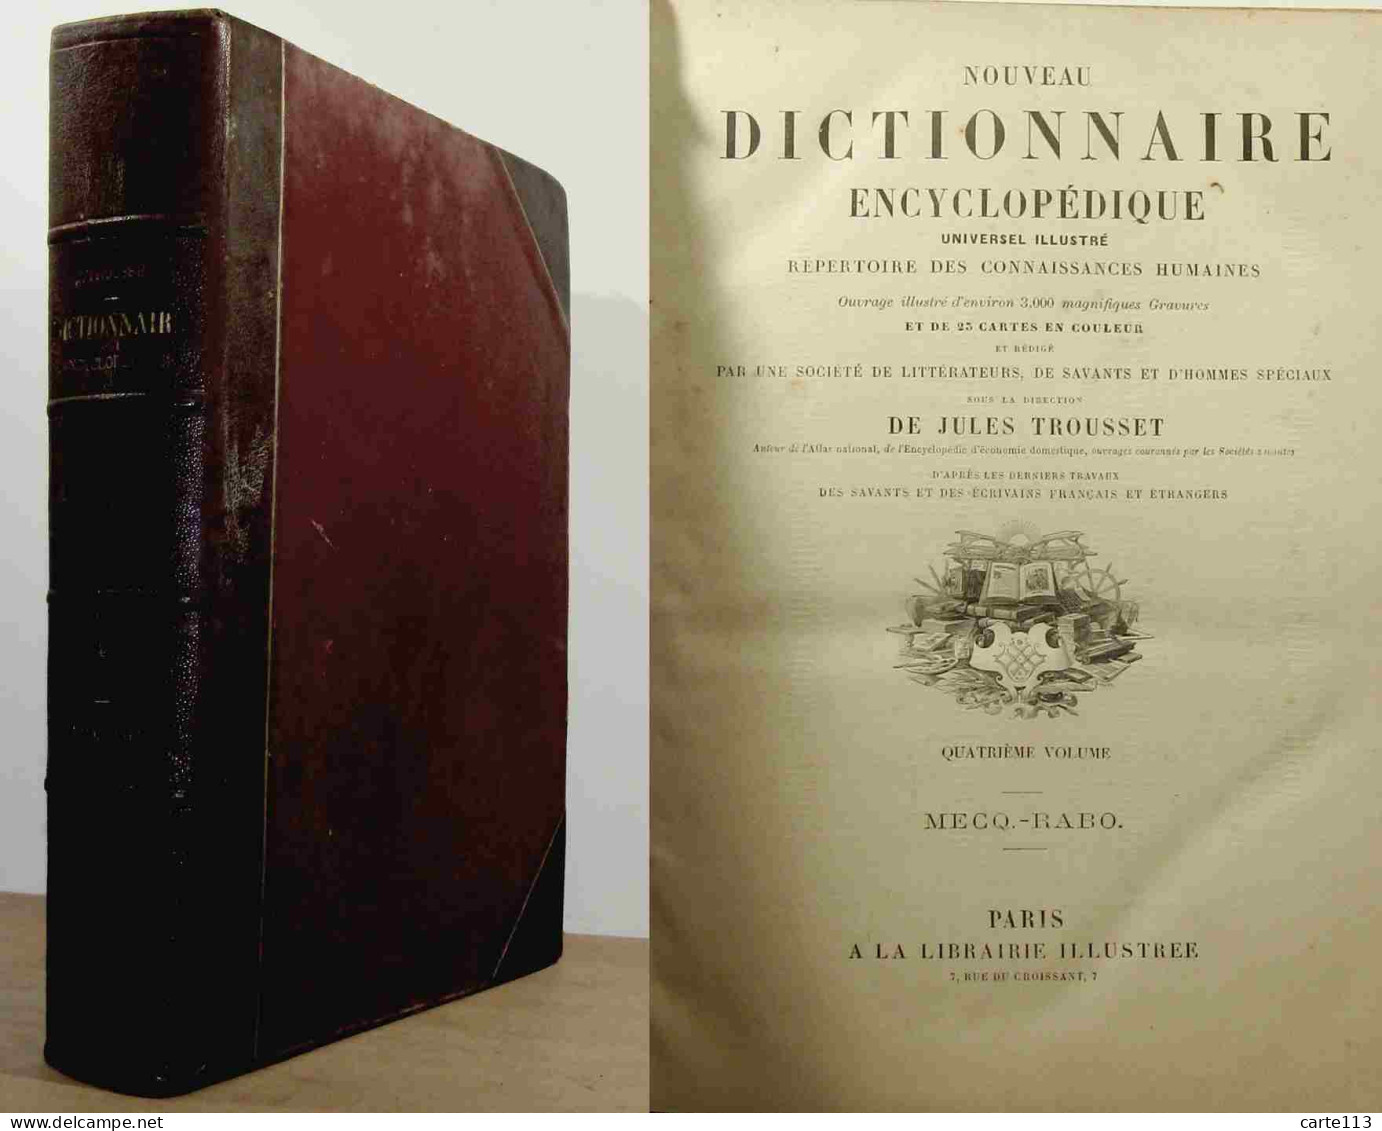 TROUSSET Jules - NOUVEAU DICTIONNAIRE ENCYCLOPEDIQUE UNIVERSEL ILLUSTRE - VOLUME 4 - M - 1801-1900